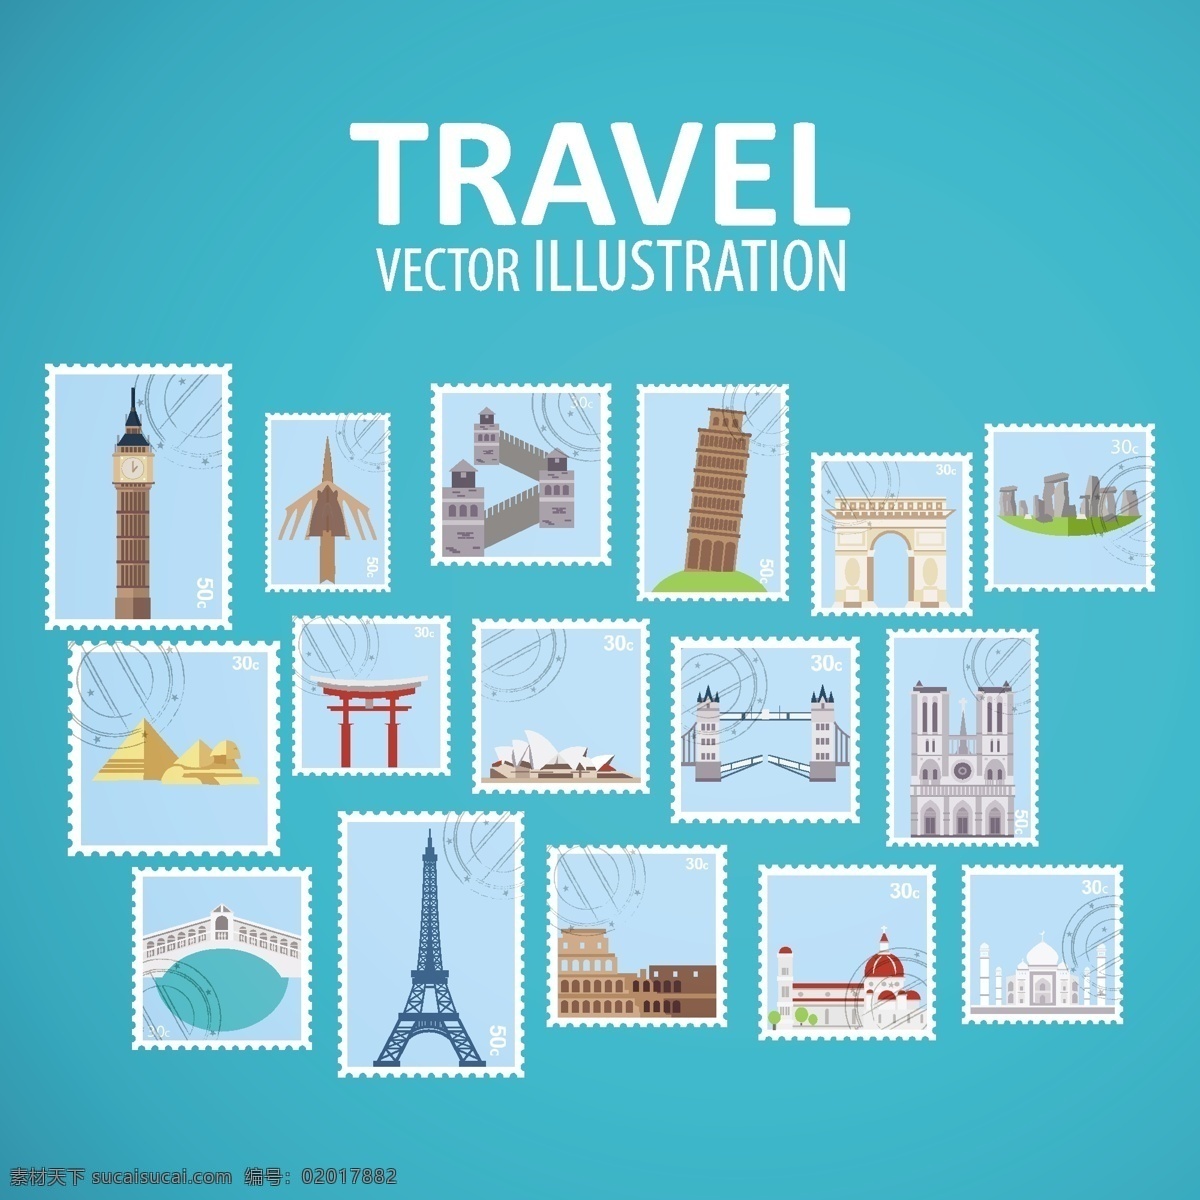 世界 地标 邮票收藏 标识 旅游 城市 建筑 邮票 图标 贴纸 巴黎 日本 印度 伦敦 中国 墨西哥 意大利 非洲 纽约 青色 天蓝色